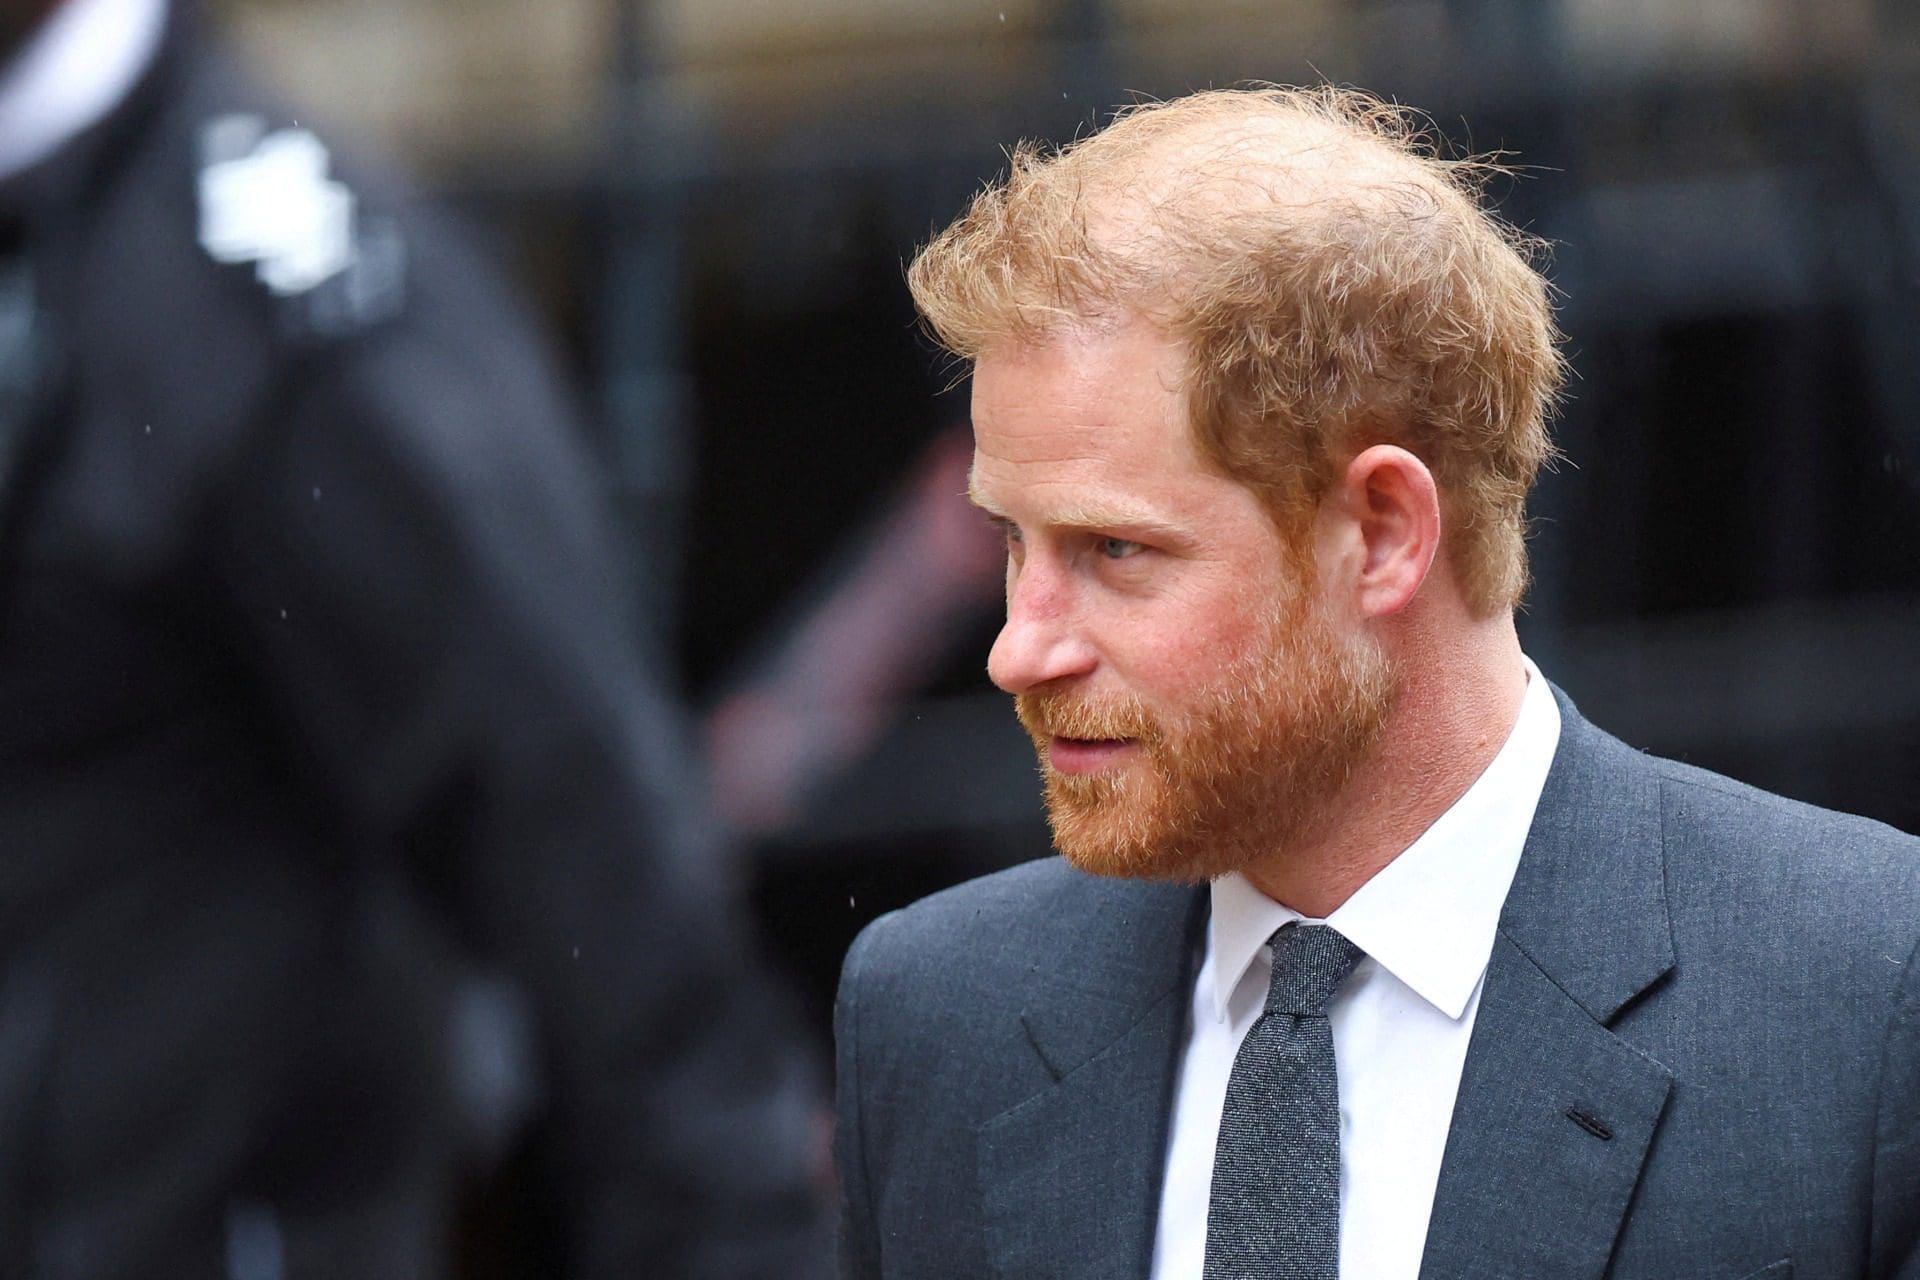 Príncipe Harry não comparece em tribunal após acusação contra grupos de media britânicos